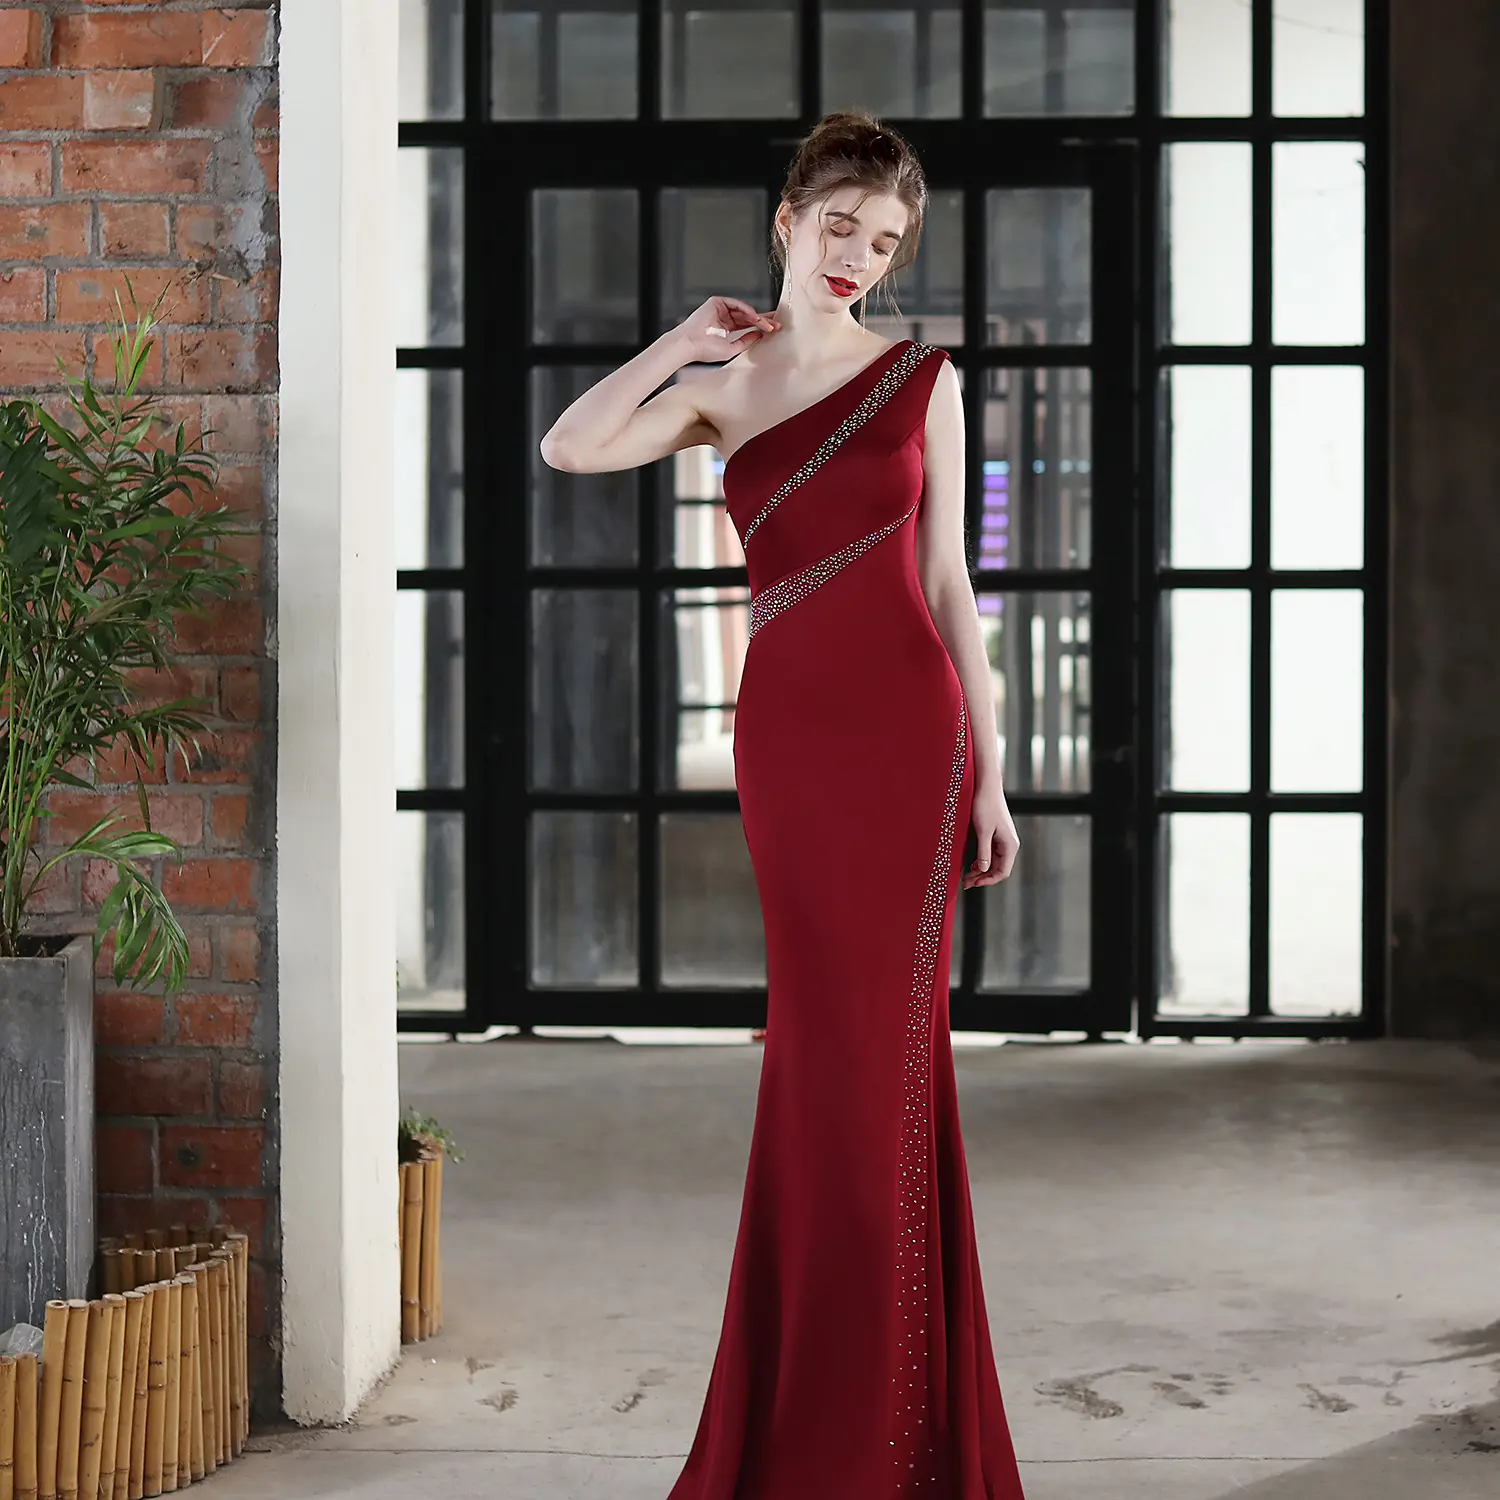 Benutzer definierte Luxus Party Chic Abendkleider Shinny Strass One Shoulder Mermaid Langes Kleid Für Frauen Hochzeits feier Neu